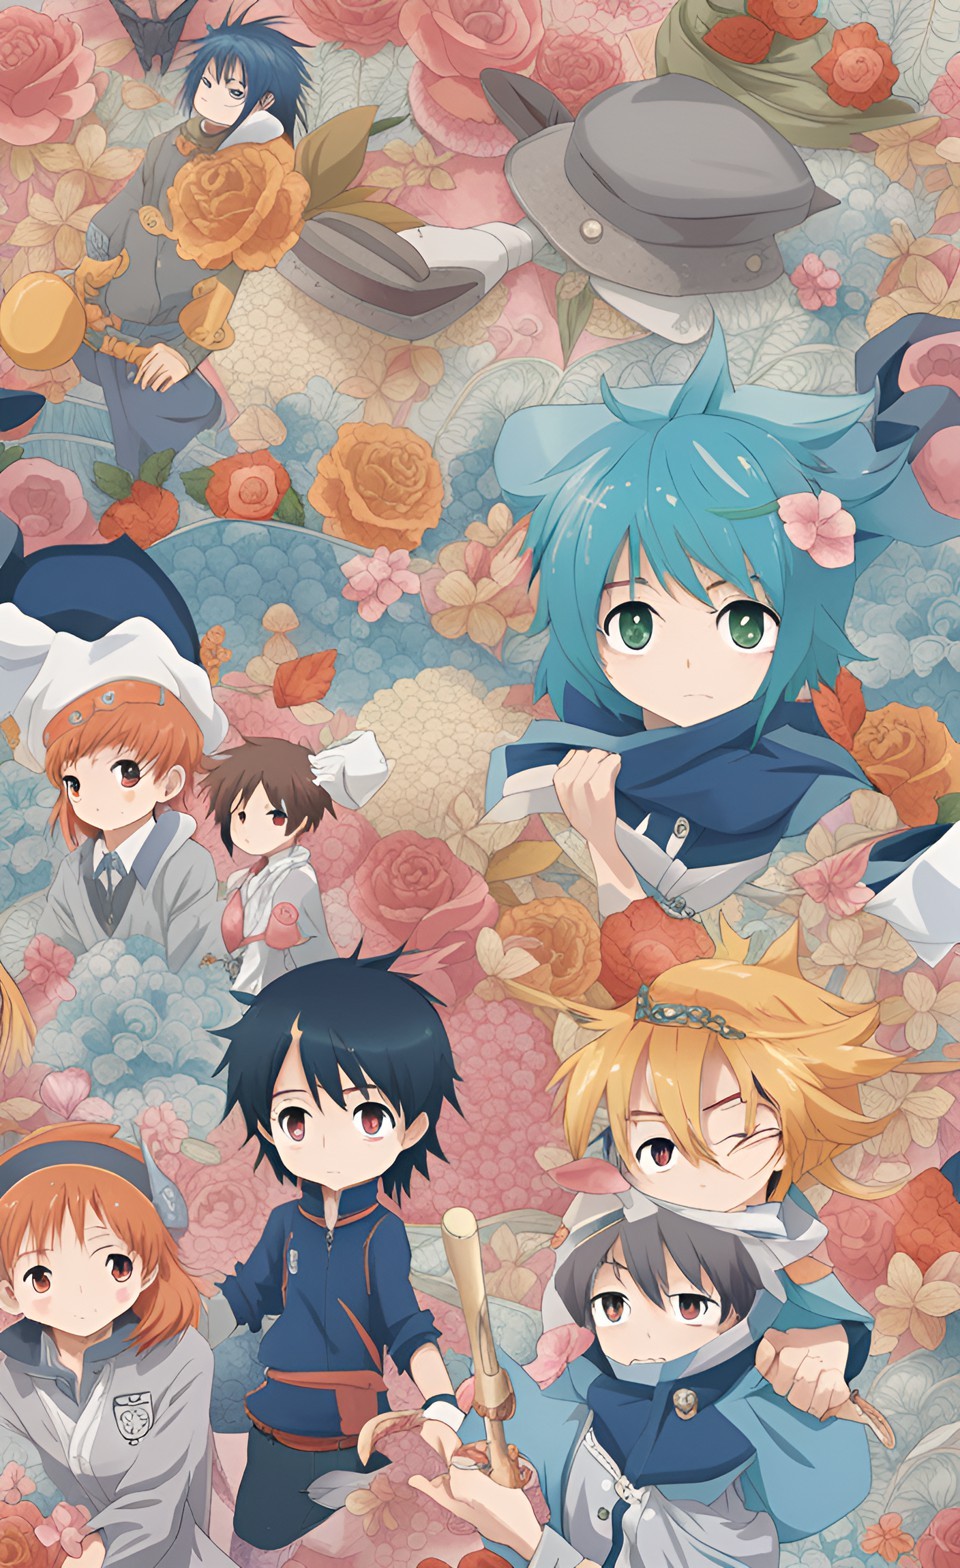 İphone Anime Duvar Kağıtları | iPhone Anime Wallpapers